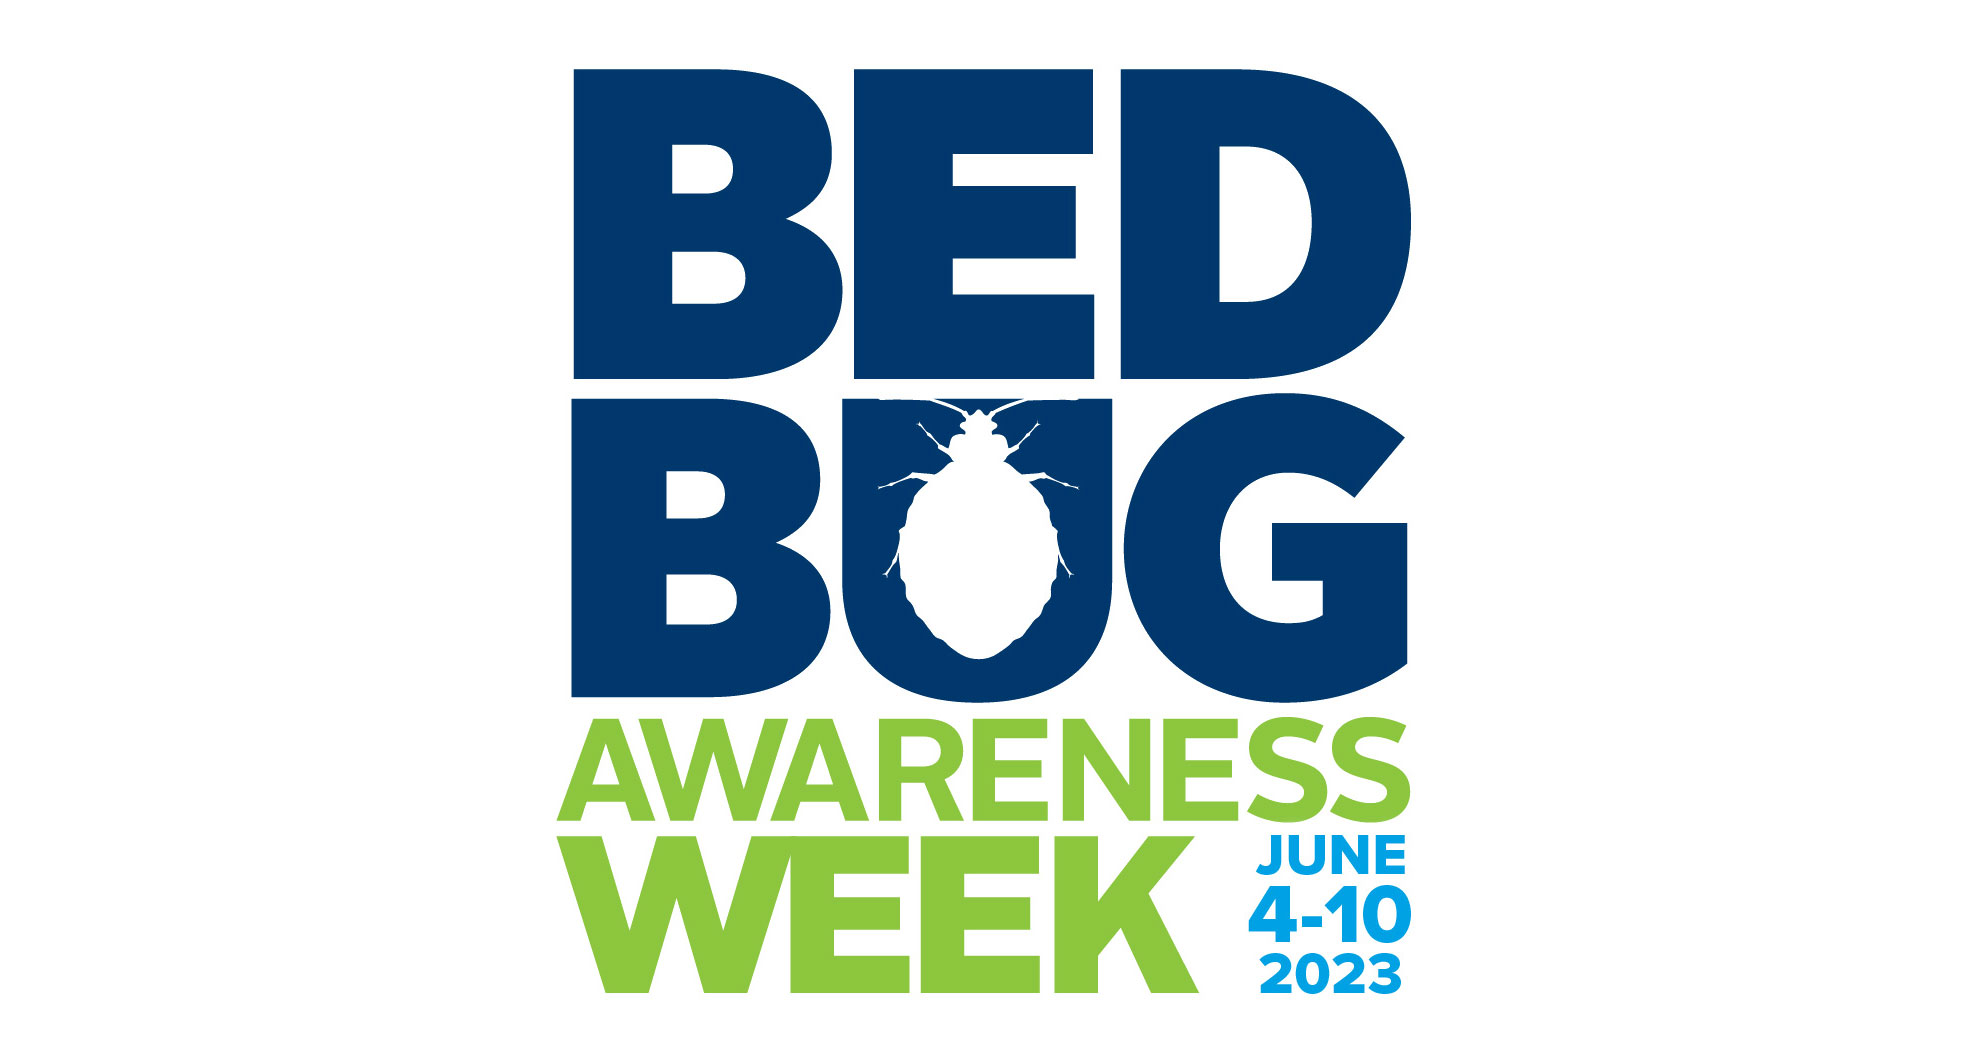 Bed Bug Awareness Week is June 4-10, 2023